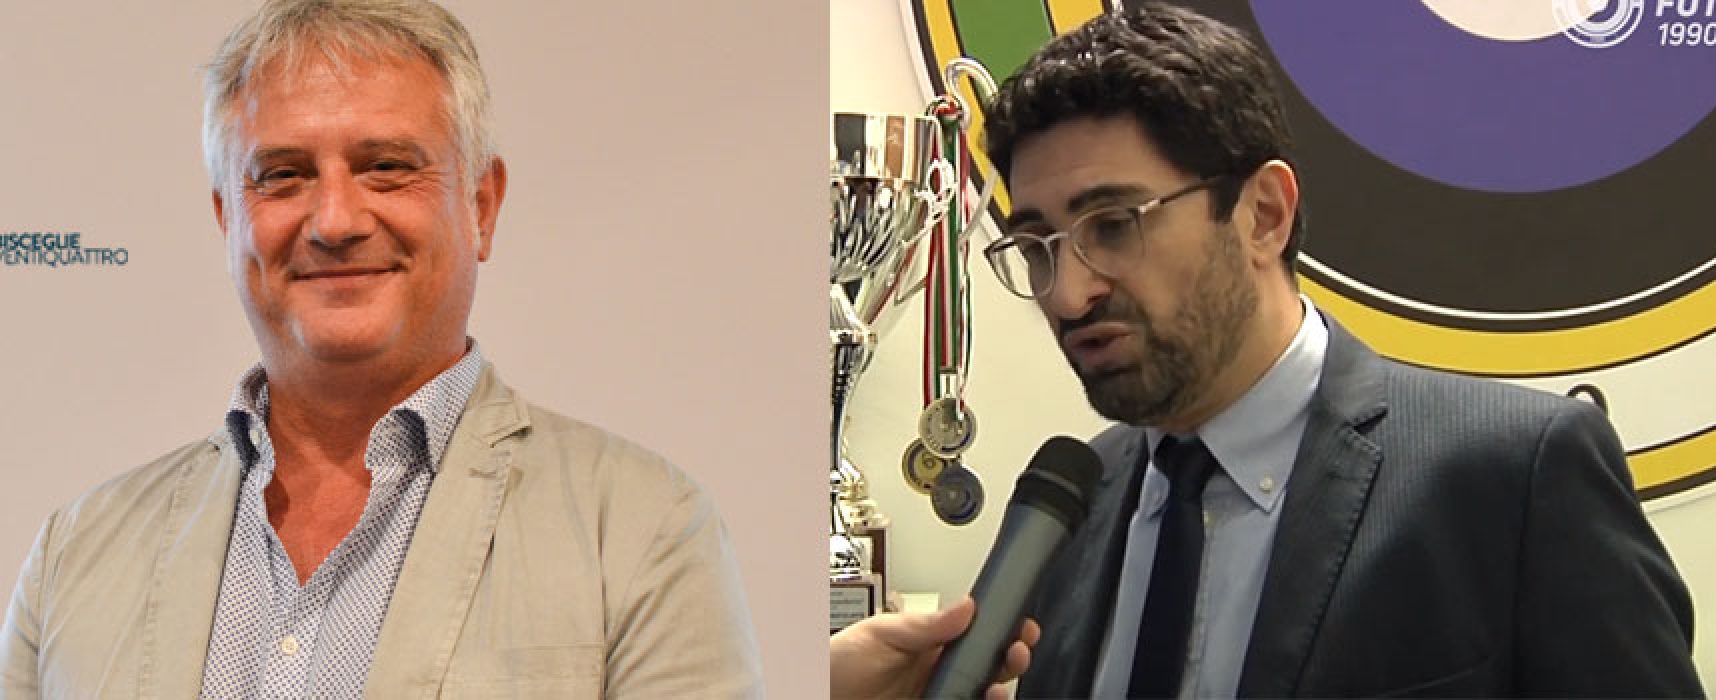 Assessore Naglieri commenta andamento Futsal Bisceglie, il presidente Simone replica / VIDEO